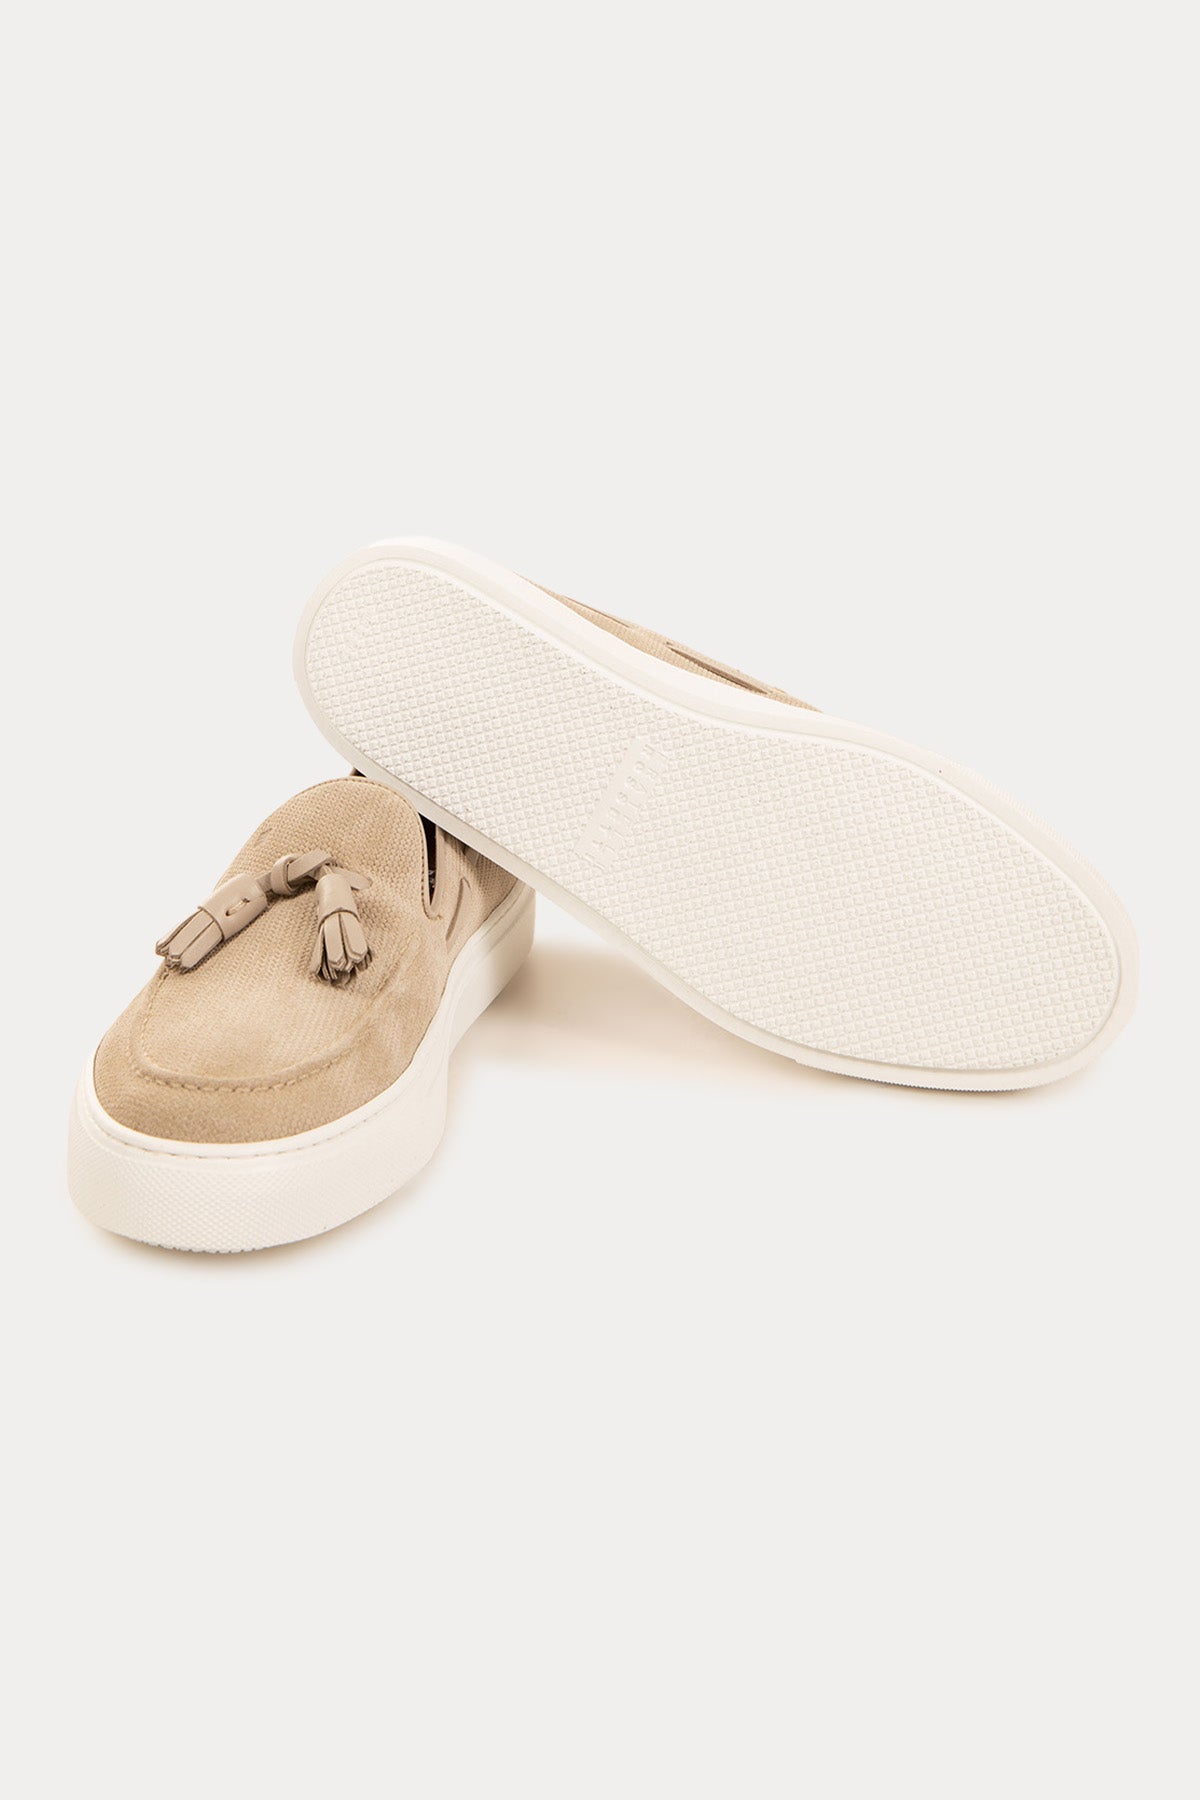 Fratelli Rossetti Örgü Deri Püsküllü Loafer Ayakkabı-Libas Trendy Fashion Store